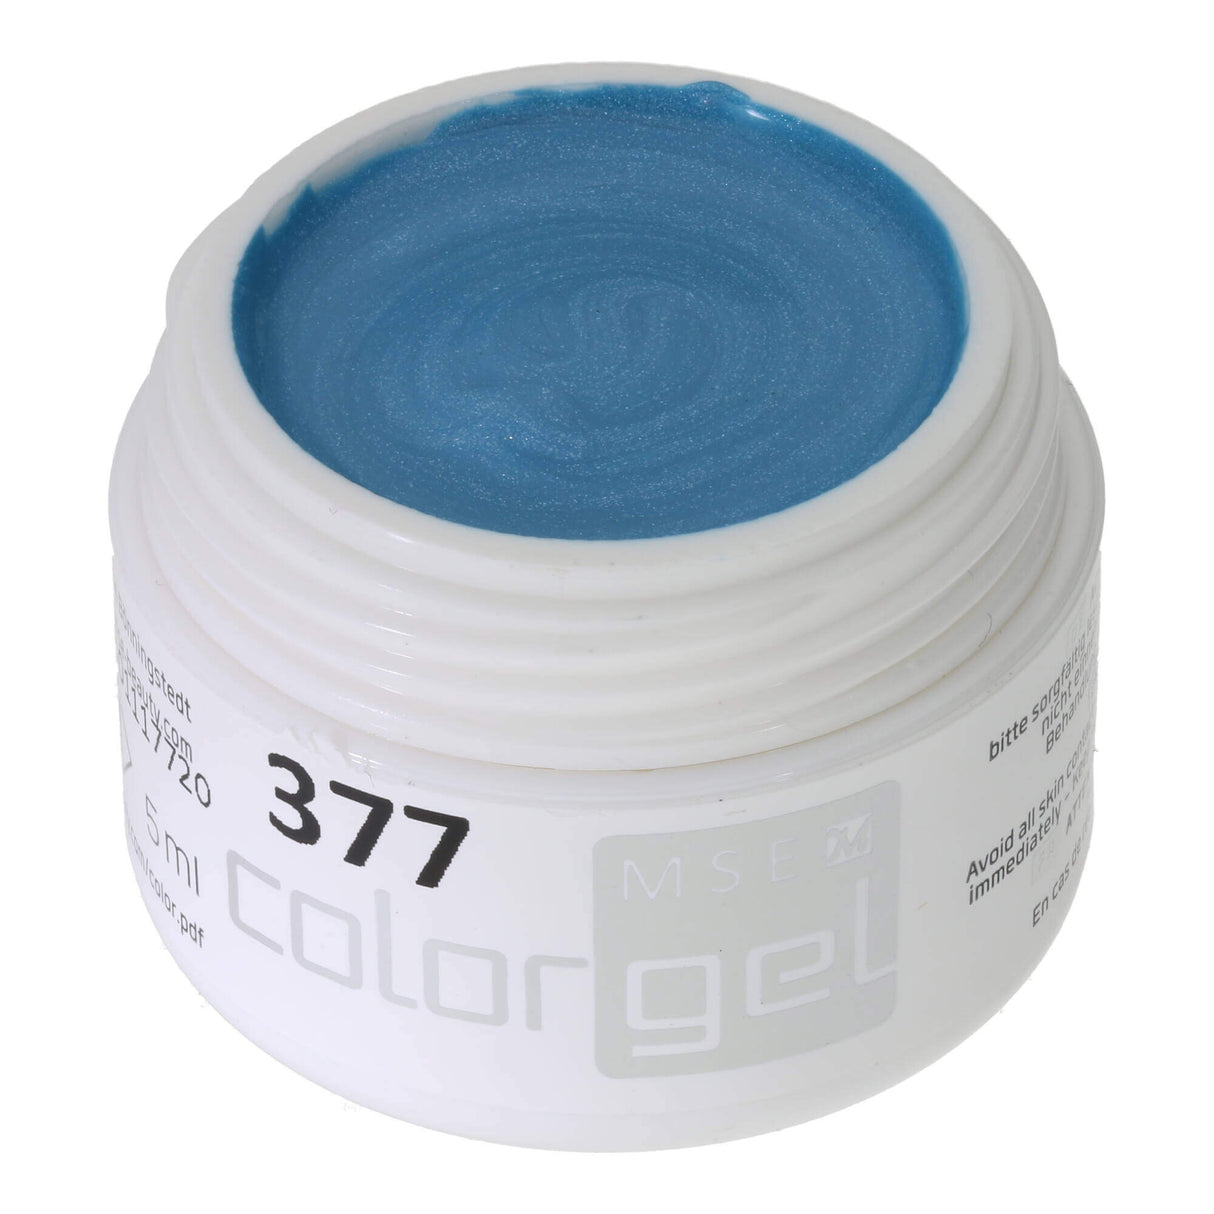 #377 Premium-EFFEKT Color Gel 5ml Mittlerer Tütkiston mit dezentem Schimmer